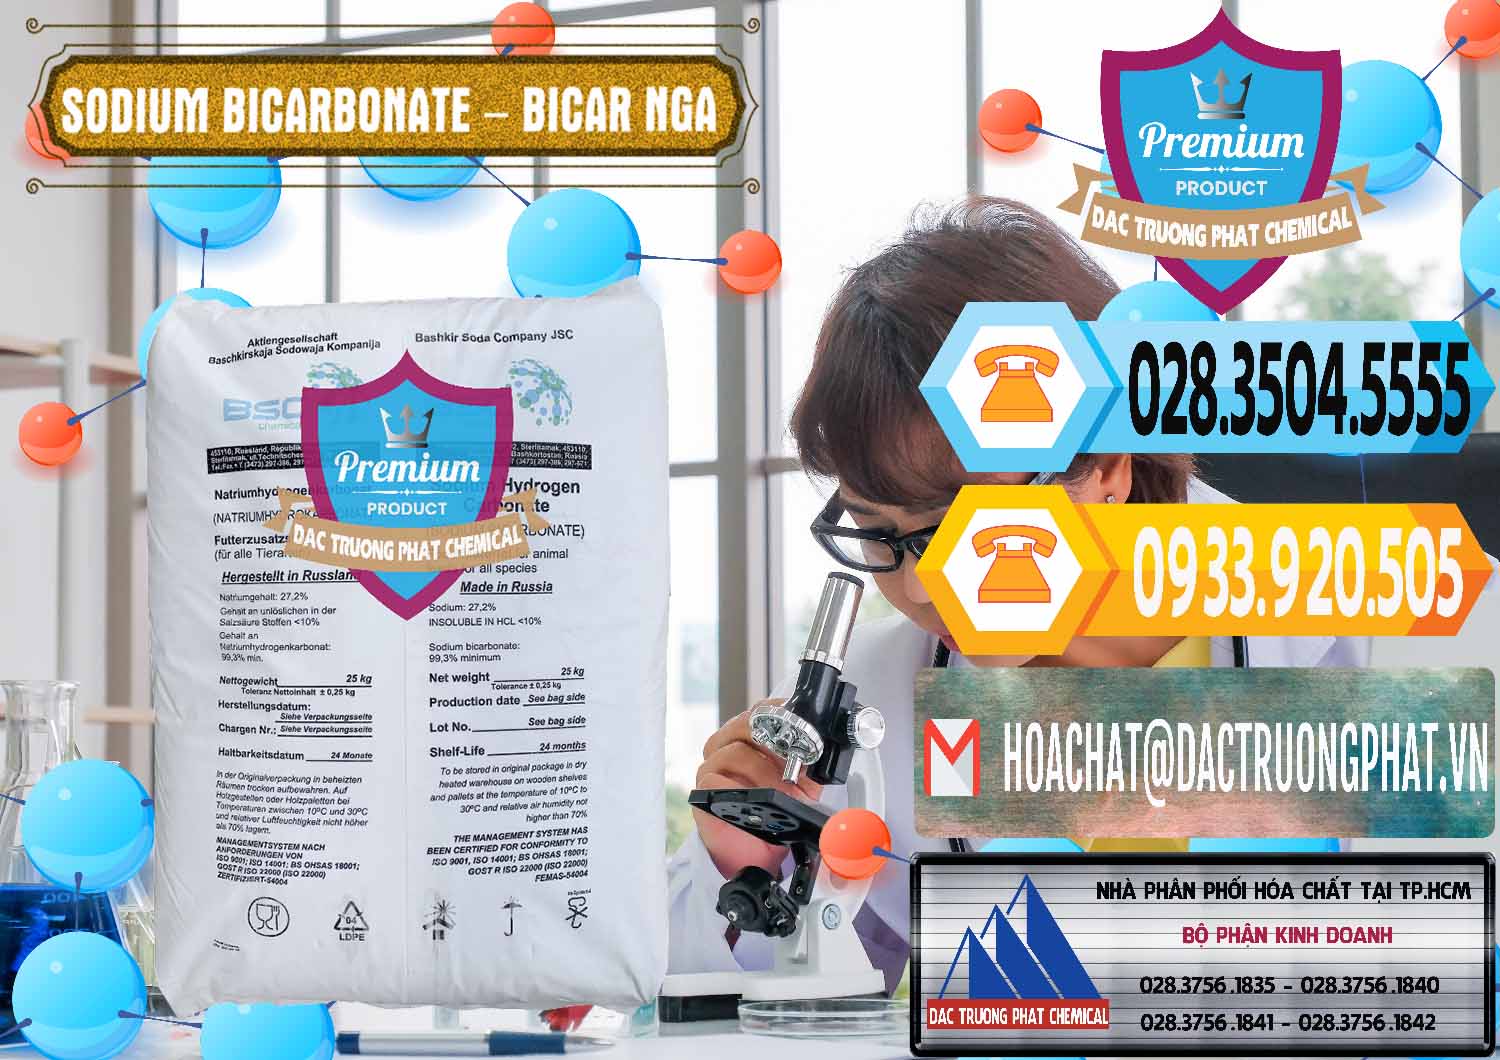 Nơi cung cấp & bán Sodium Bicarbonate – Bicar NaHCO3 Nga Russia - 0425 - Cty kinh doanh và cung cấp hóa chất tại TP.HCM - hoachattayrua.net